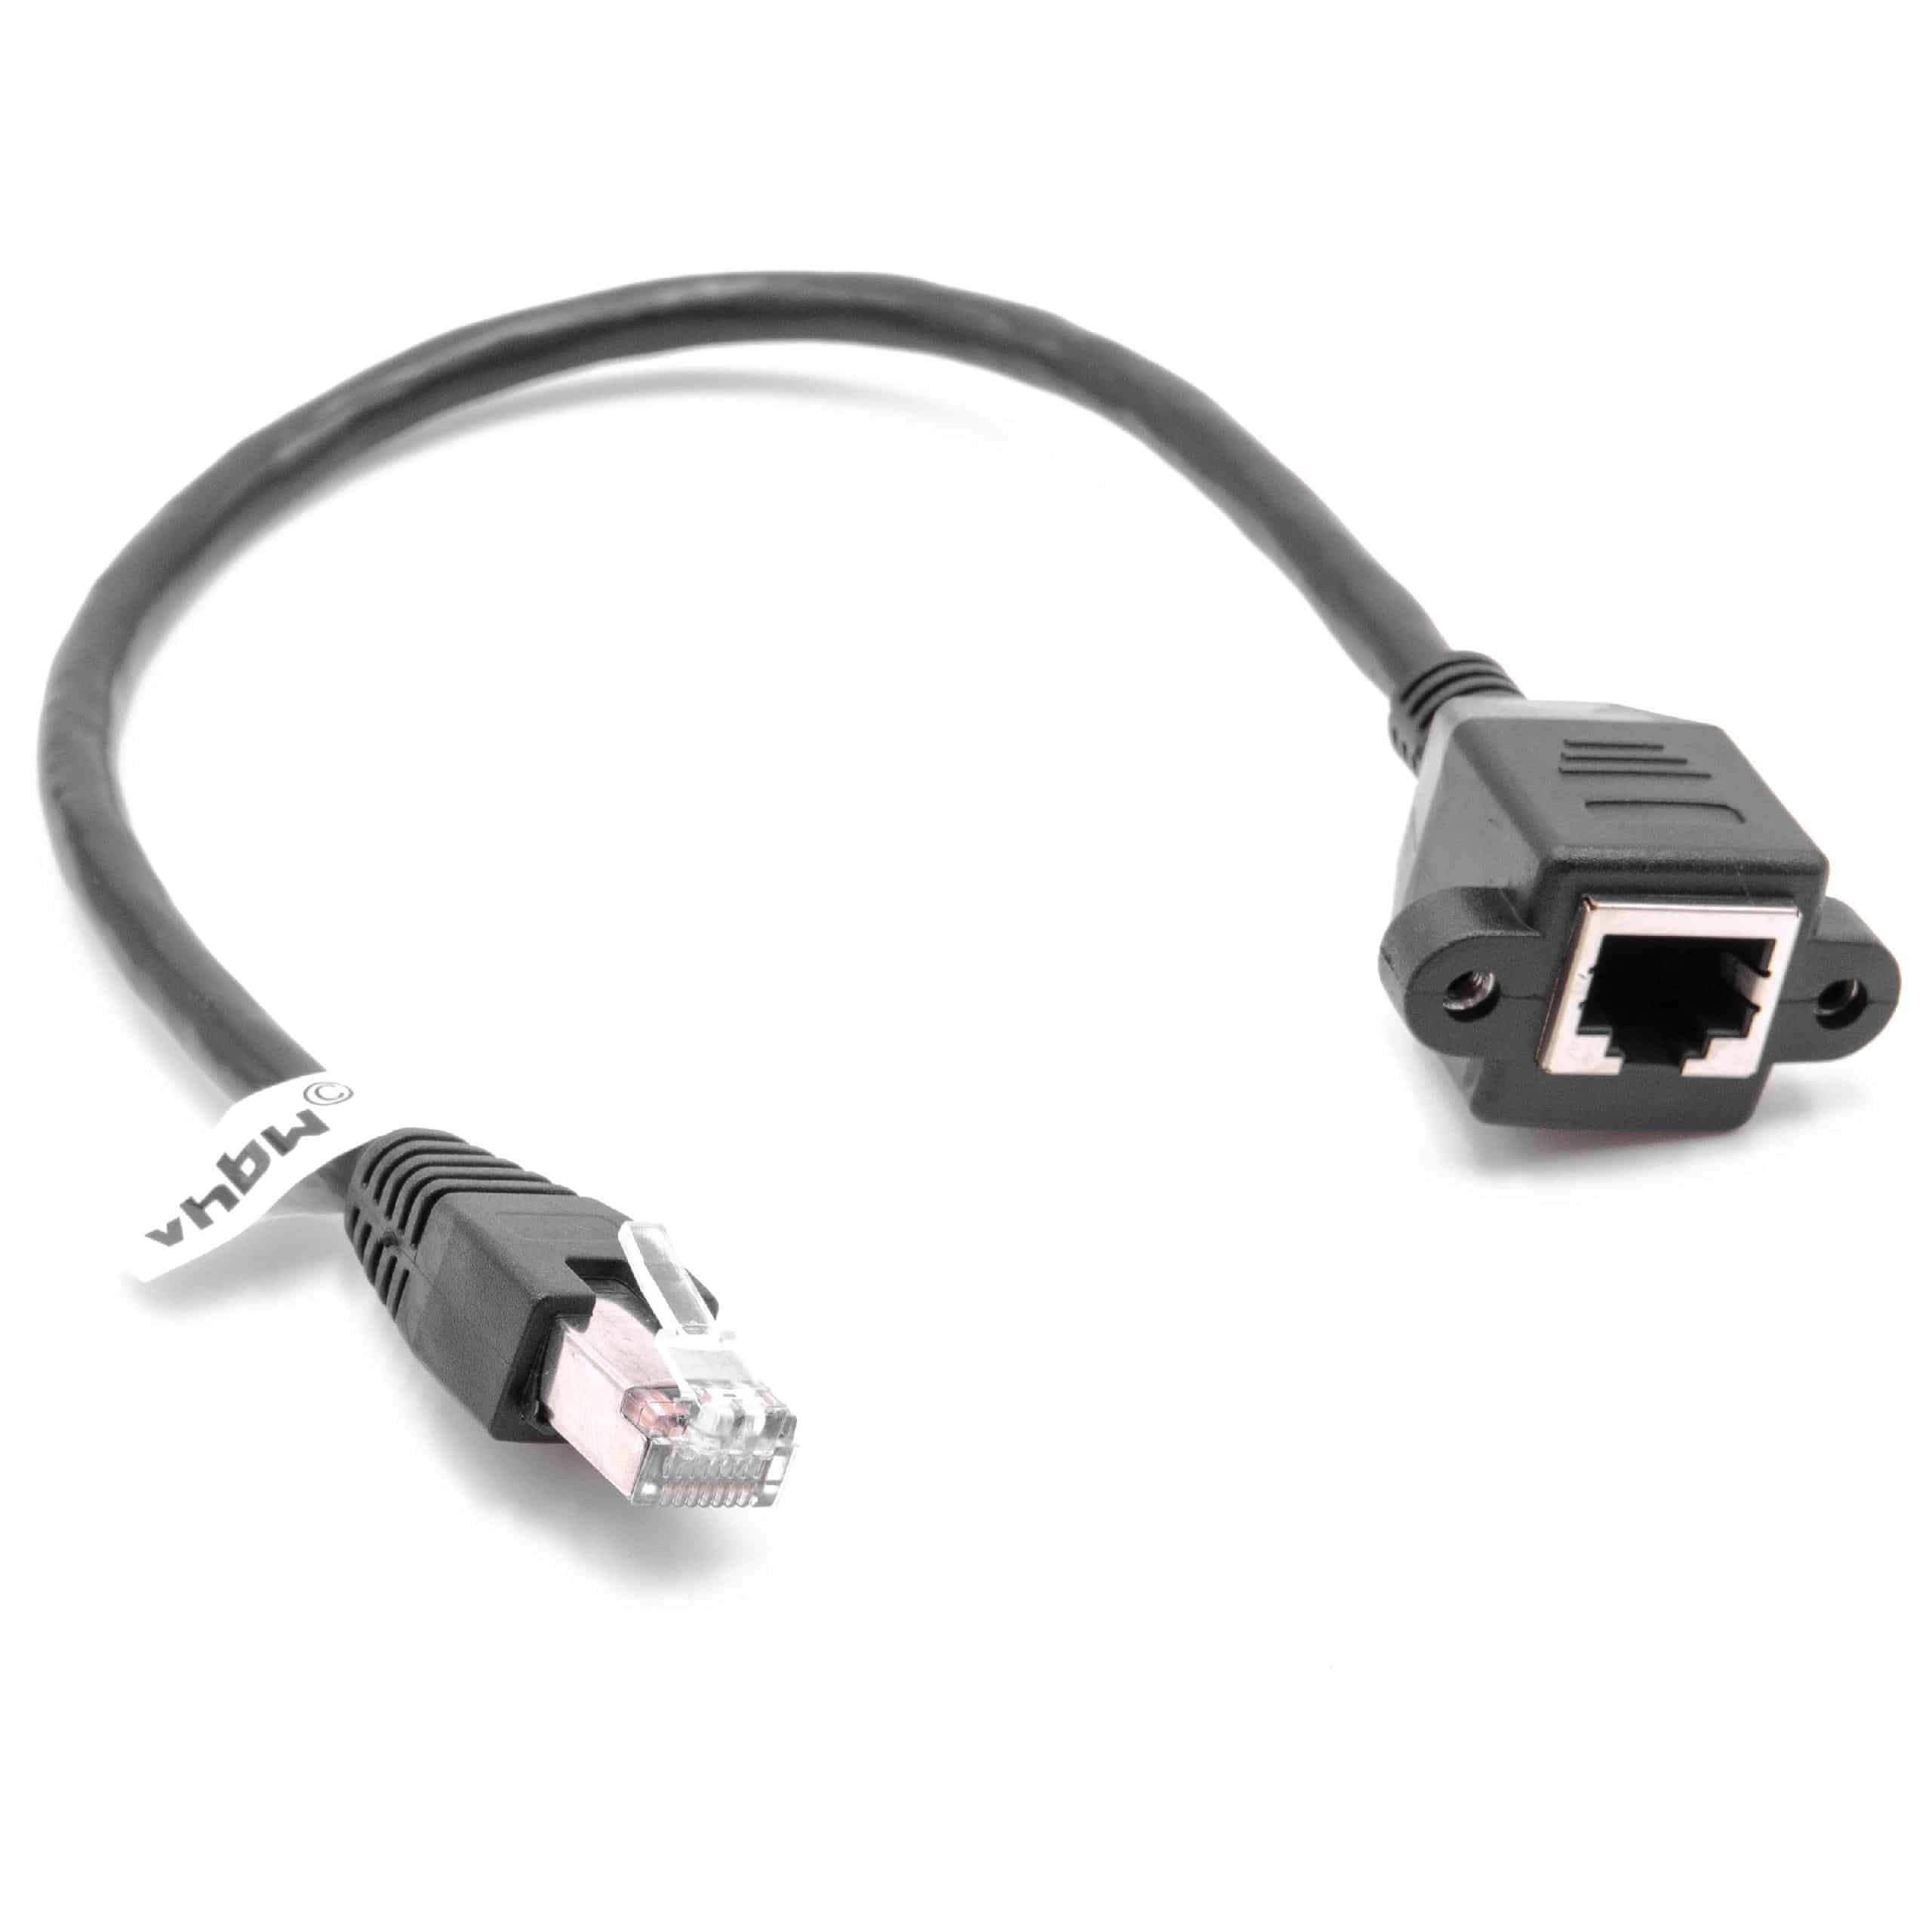 Cable de extensión Cat6, RJ45 (m) a RJ45 (h) - Cable Ethernet LAN con conector RJ45 incorporado, 0,3 m